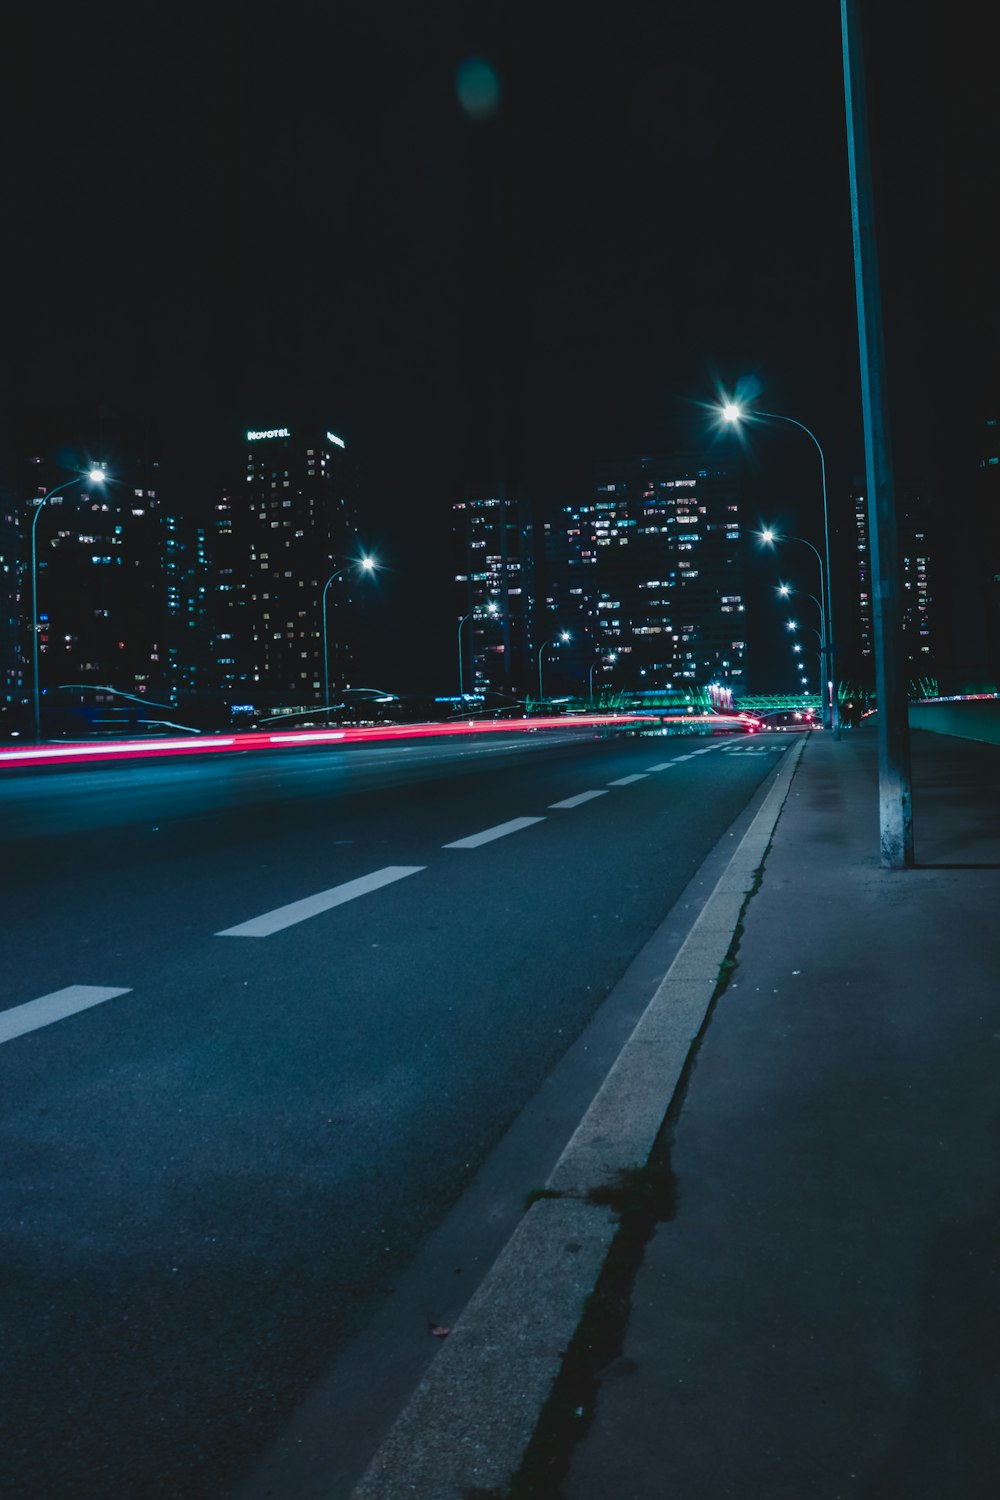 strada vuota con luci durante la notte